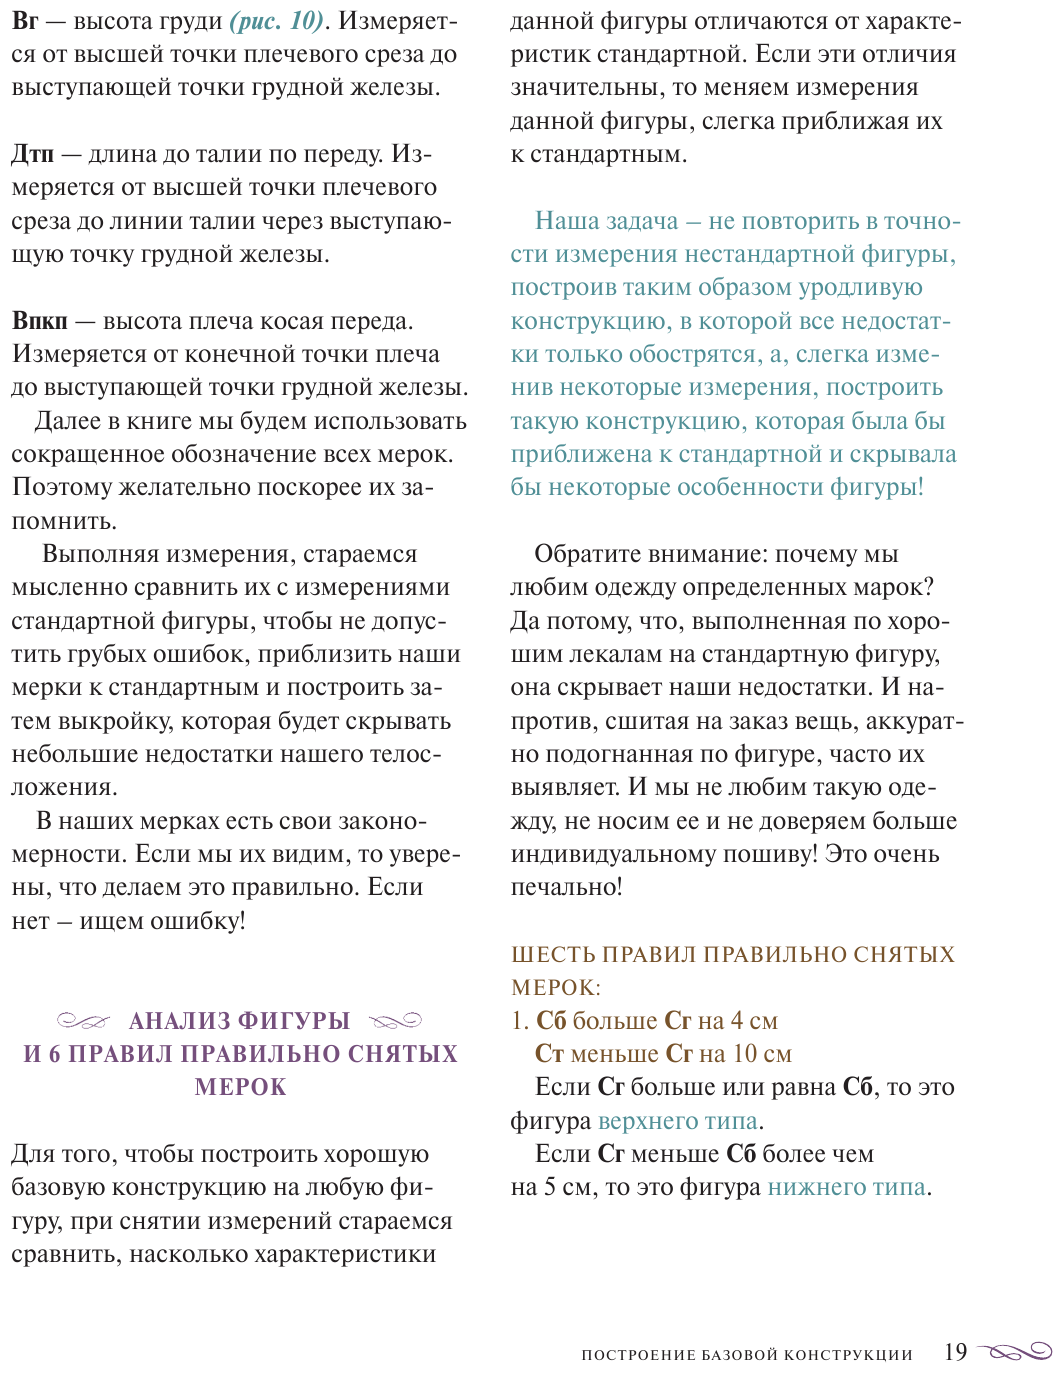 Большая энциклопедия кройки и шитья. Безлекальный метод - фото №13